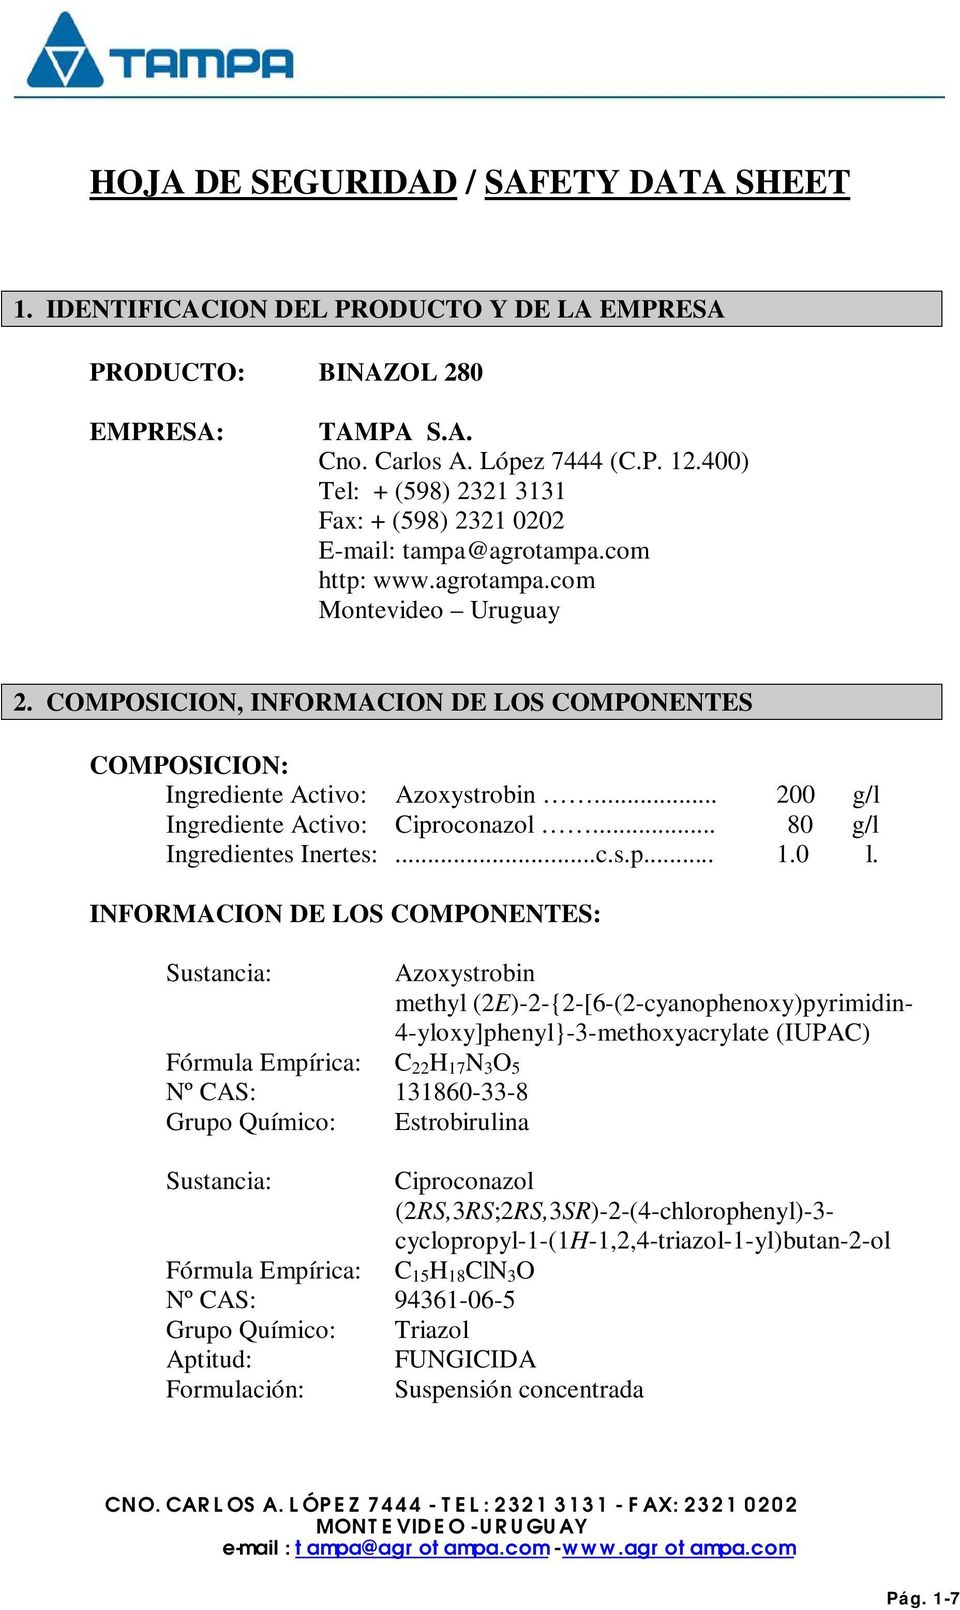 COMPOSICION, INFORMACION DE LOS COMPONENTES COMPOSICION: Ingrediente Activo: Azoxystrobin... 200 g/l Ingrediente Activo: Ciproconazol... 80 g/l Ingredientes Inertes:...c.s.p... 1.0 l.